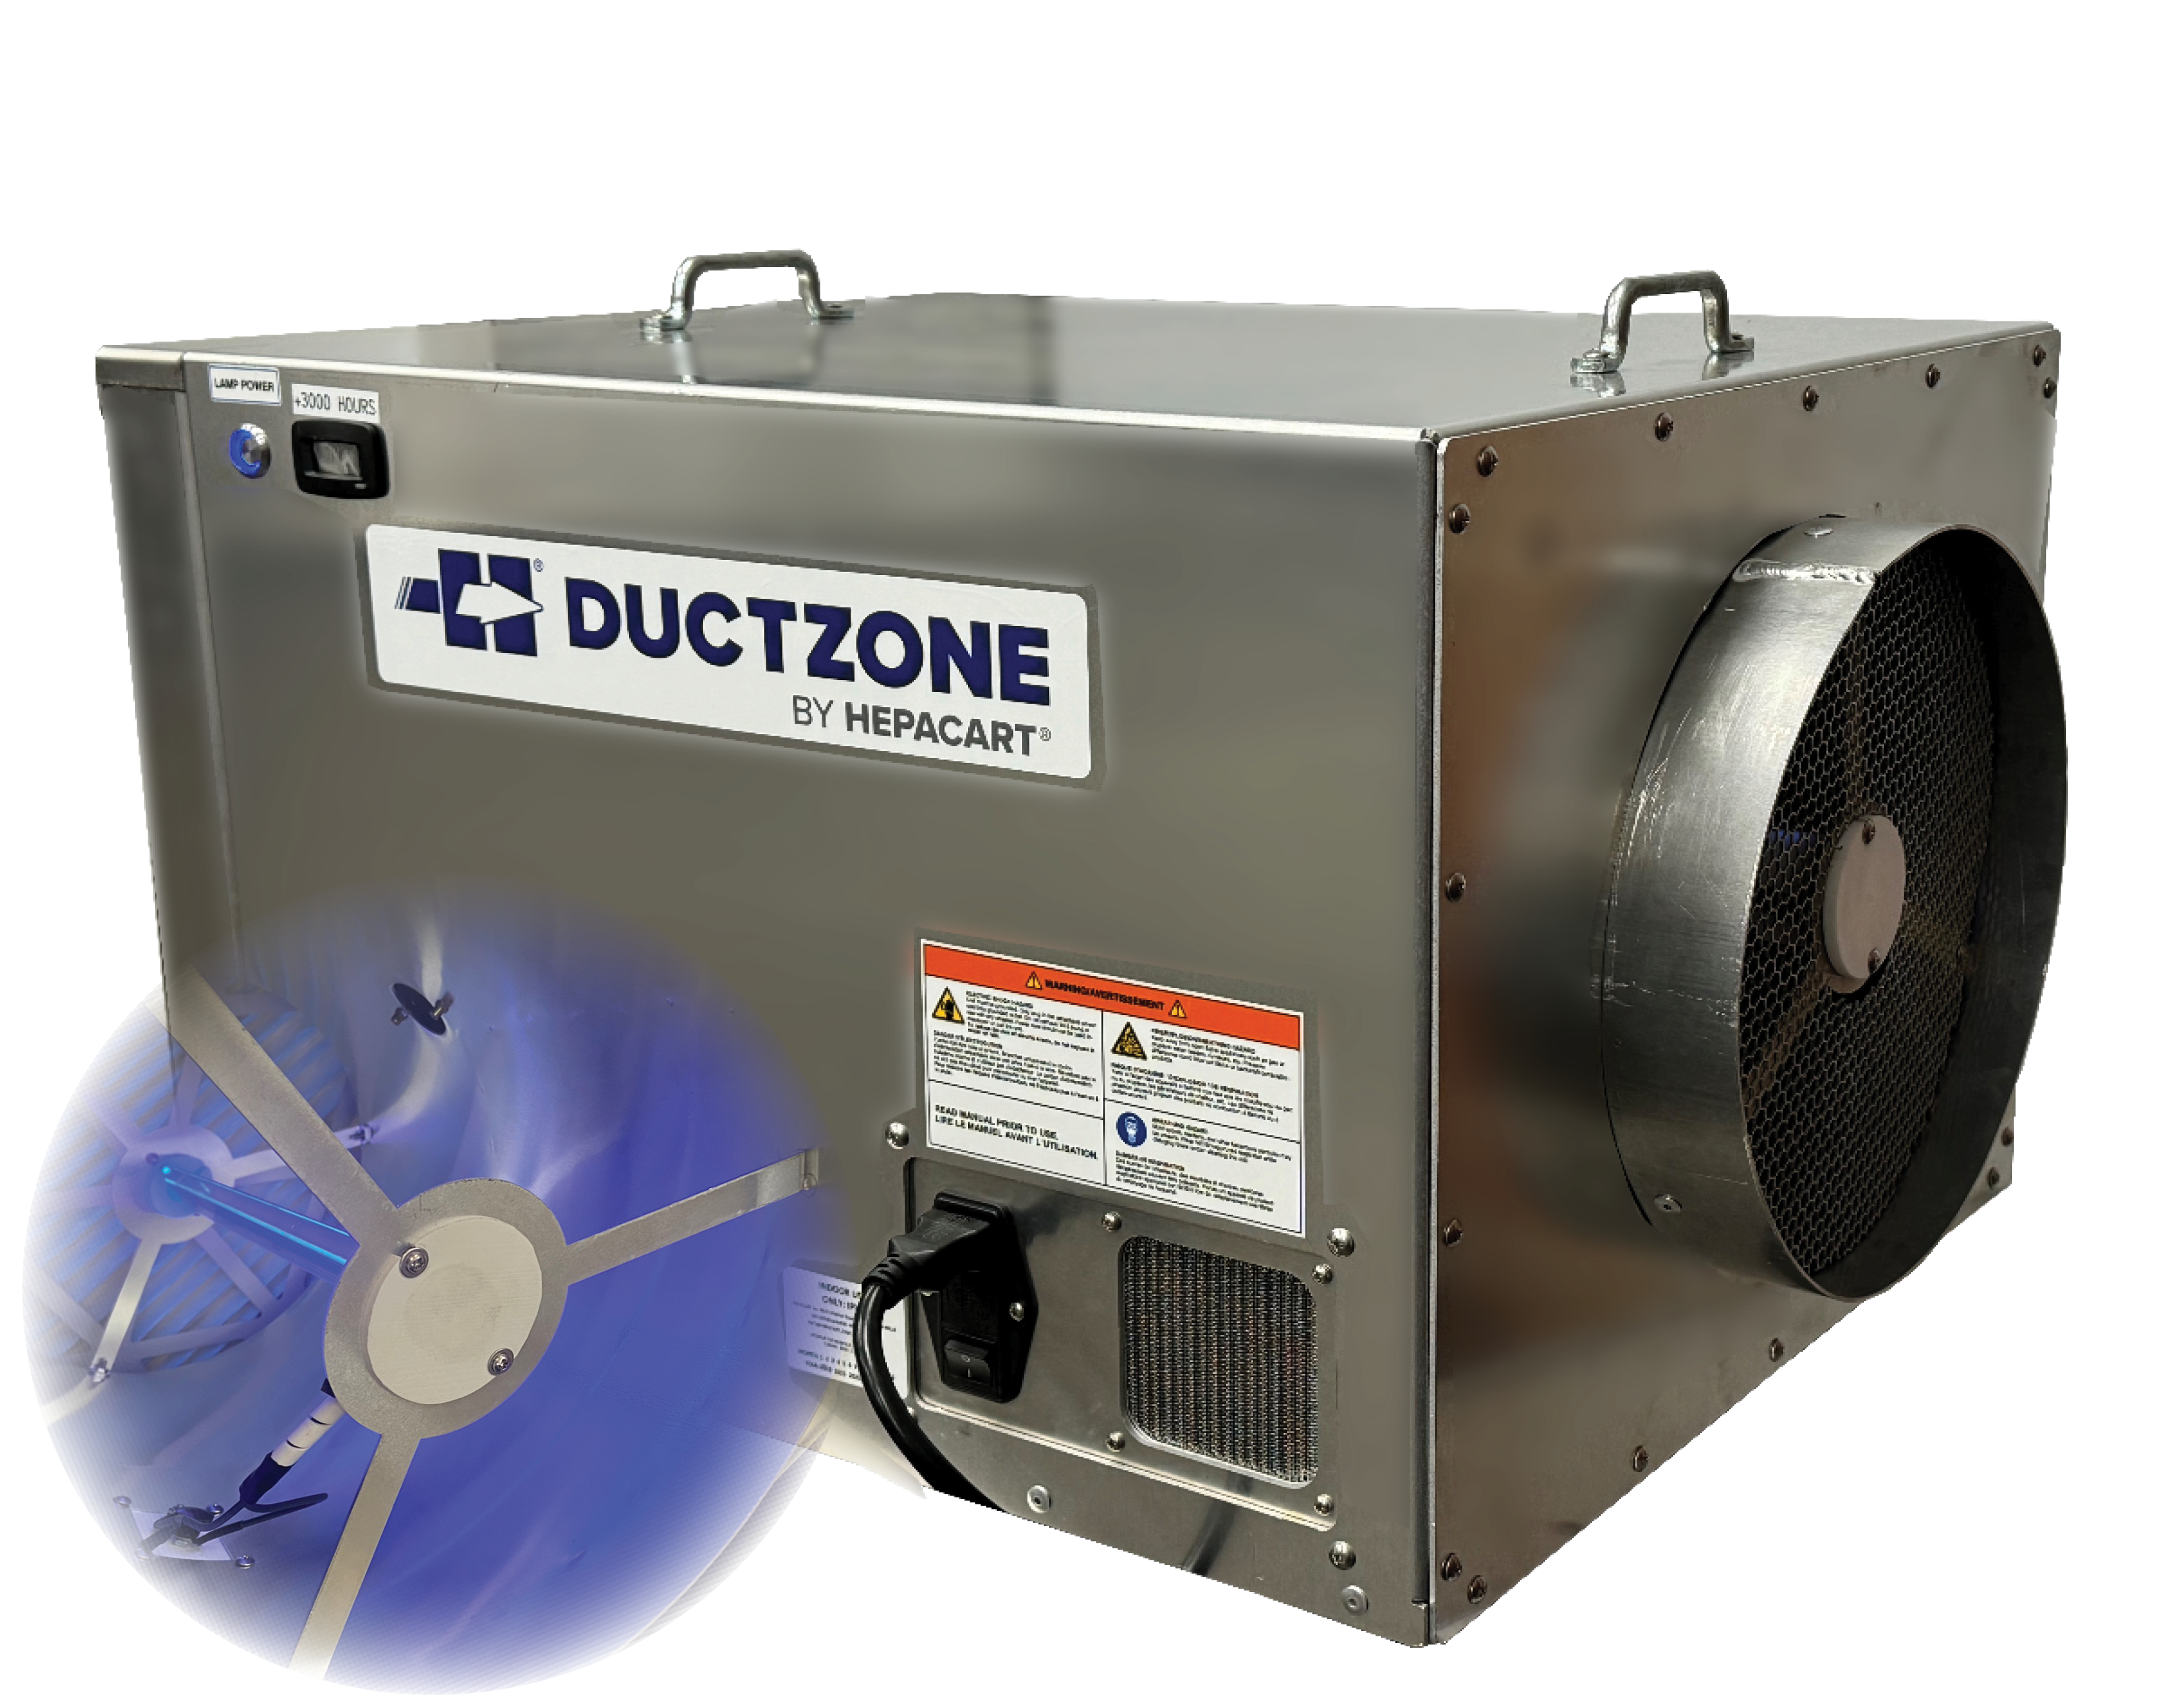 DuctZone New Branding